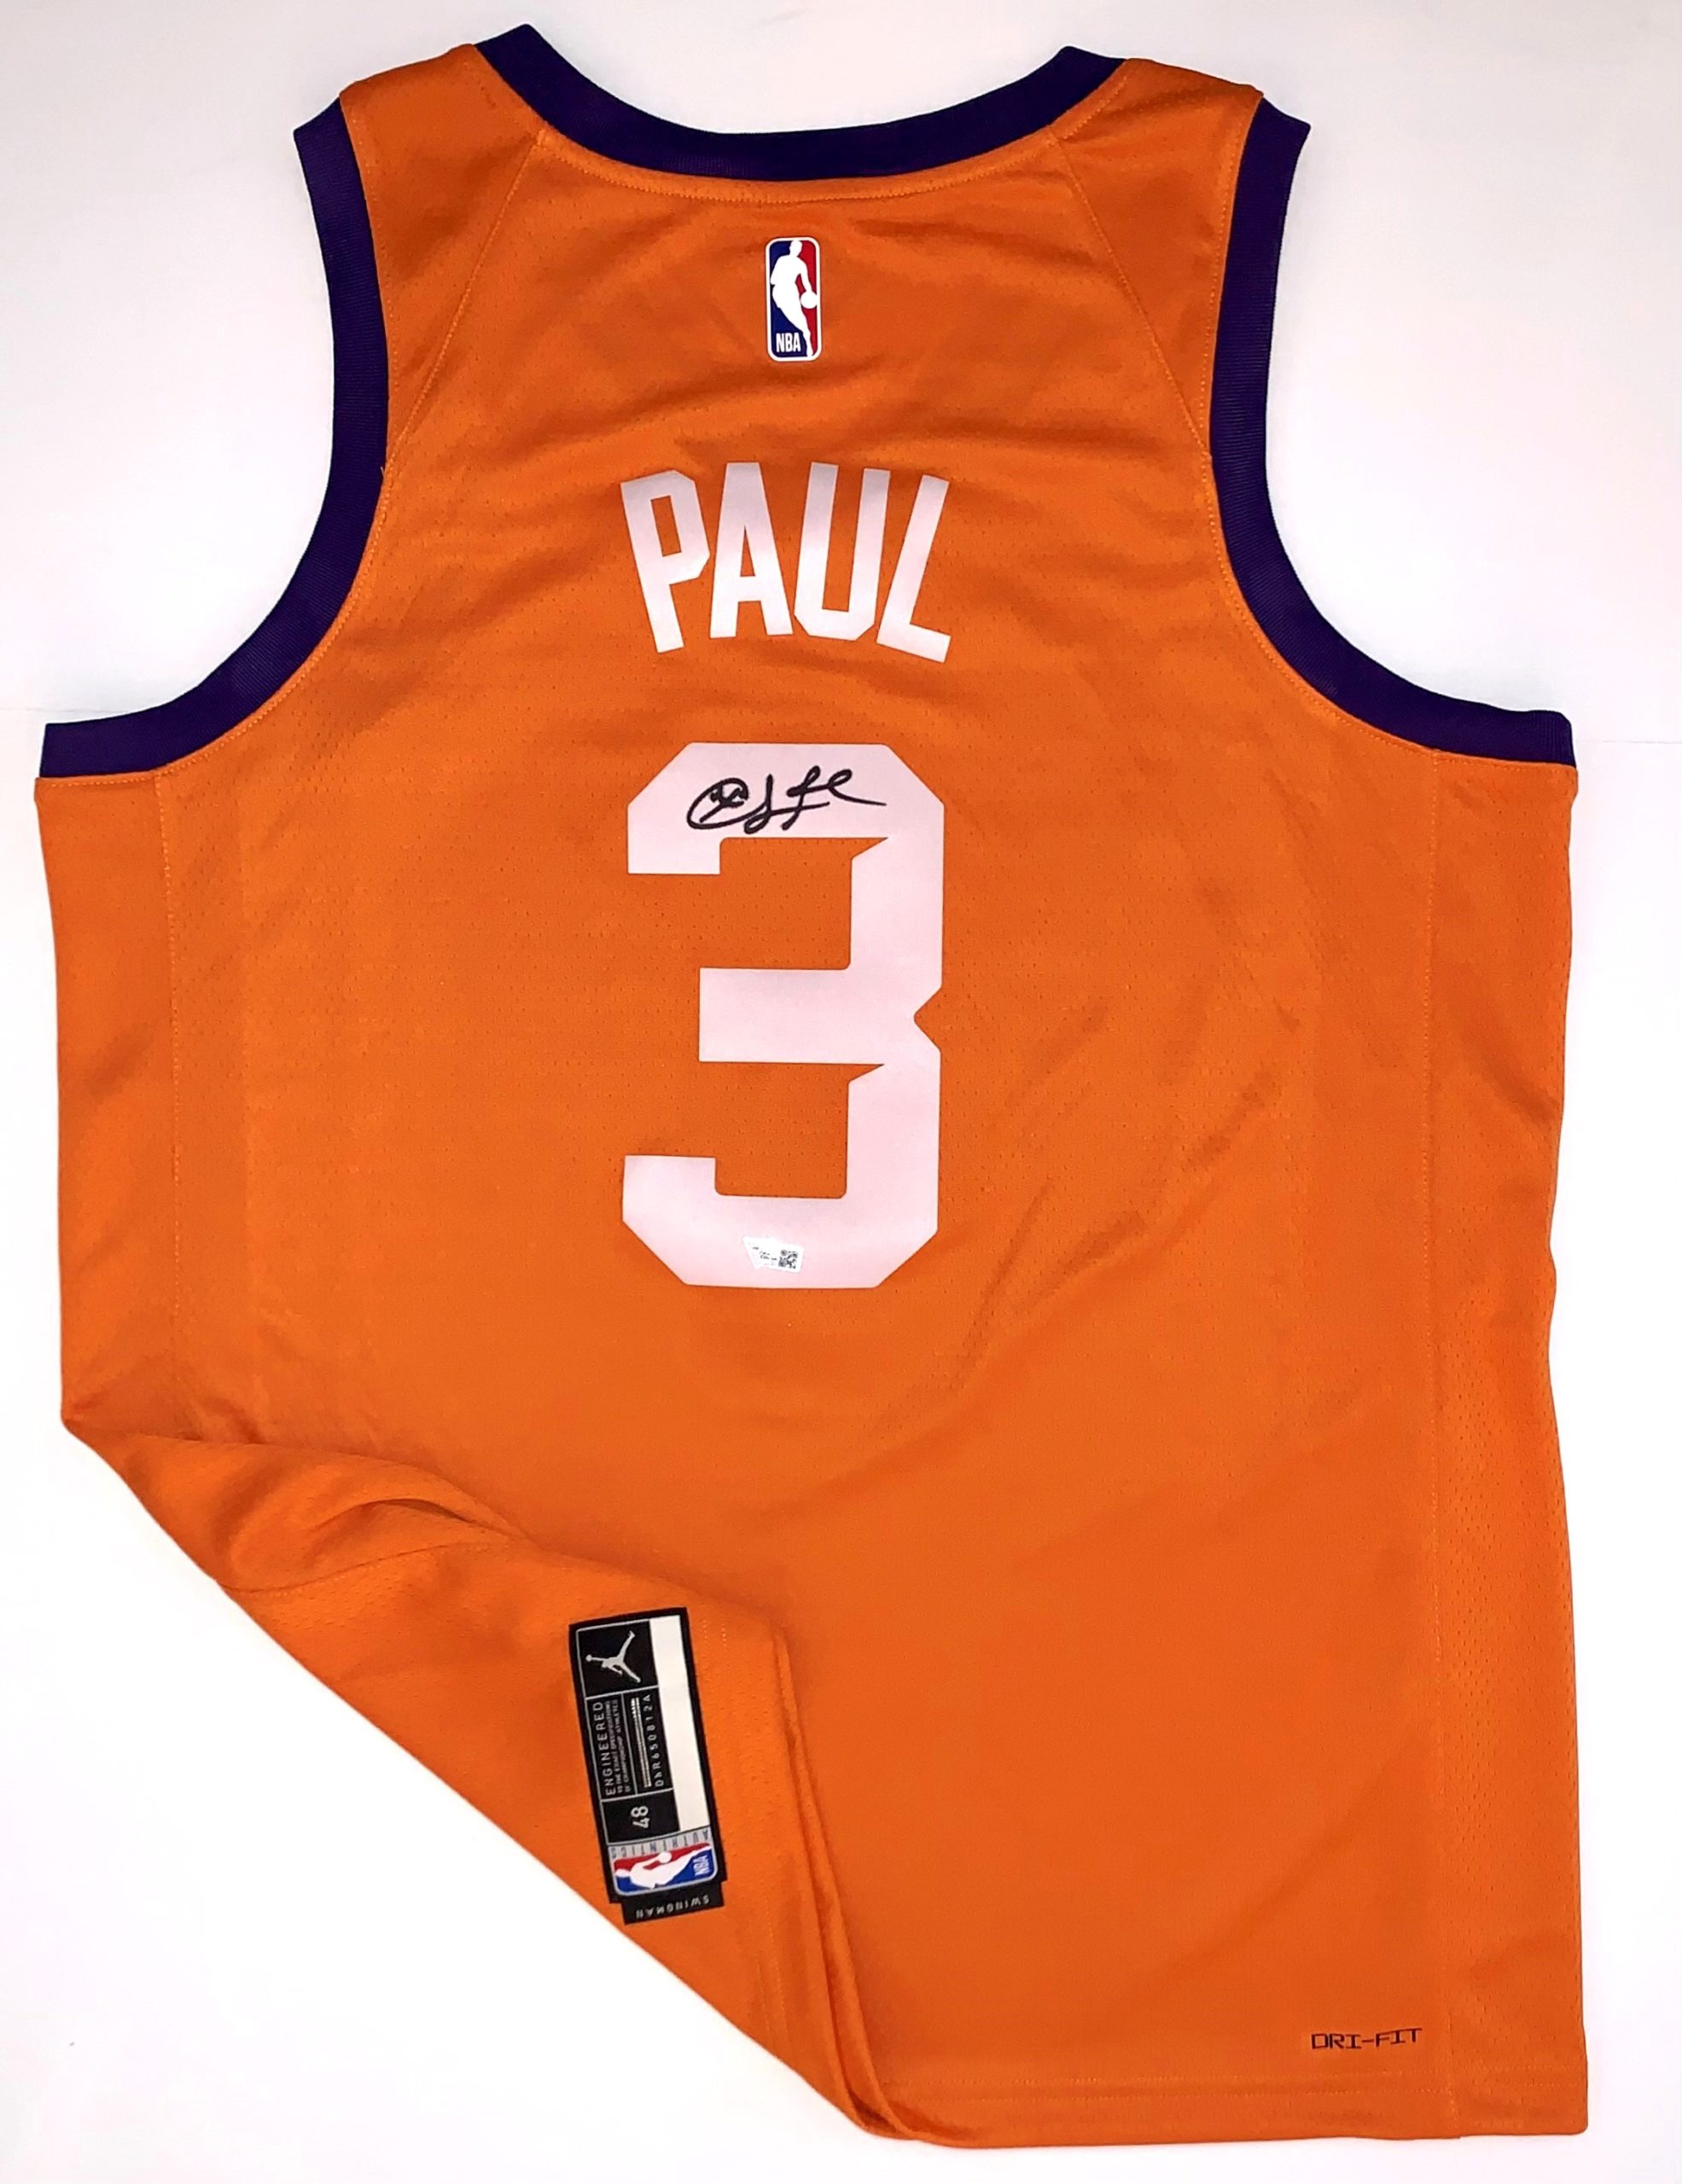 Chris Paul Autographed Phoenix Suns Jersey (Orange) - The Autograph Source